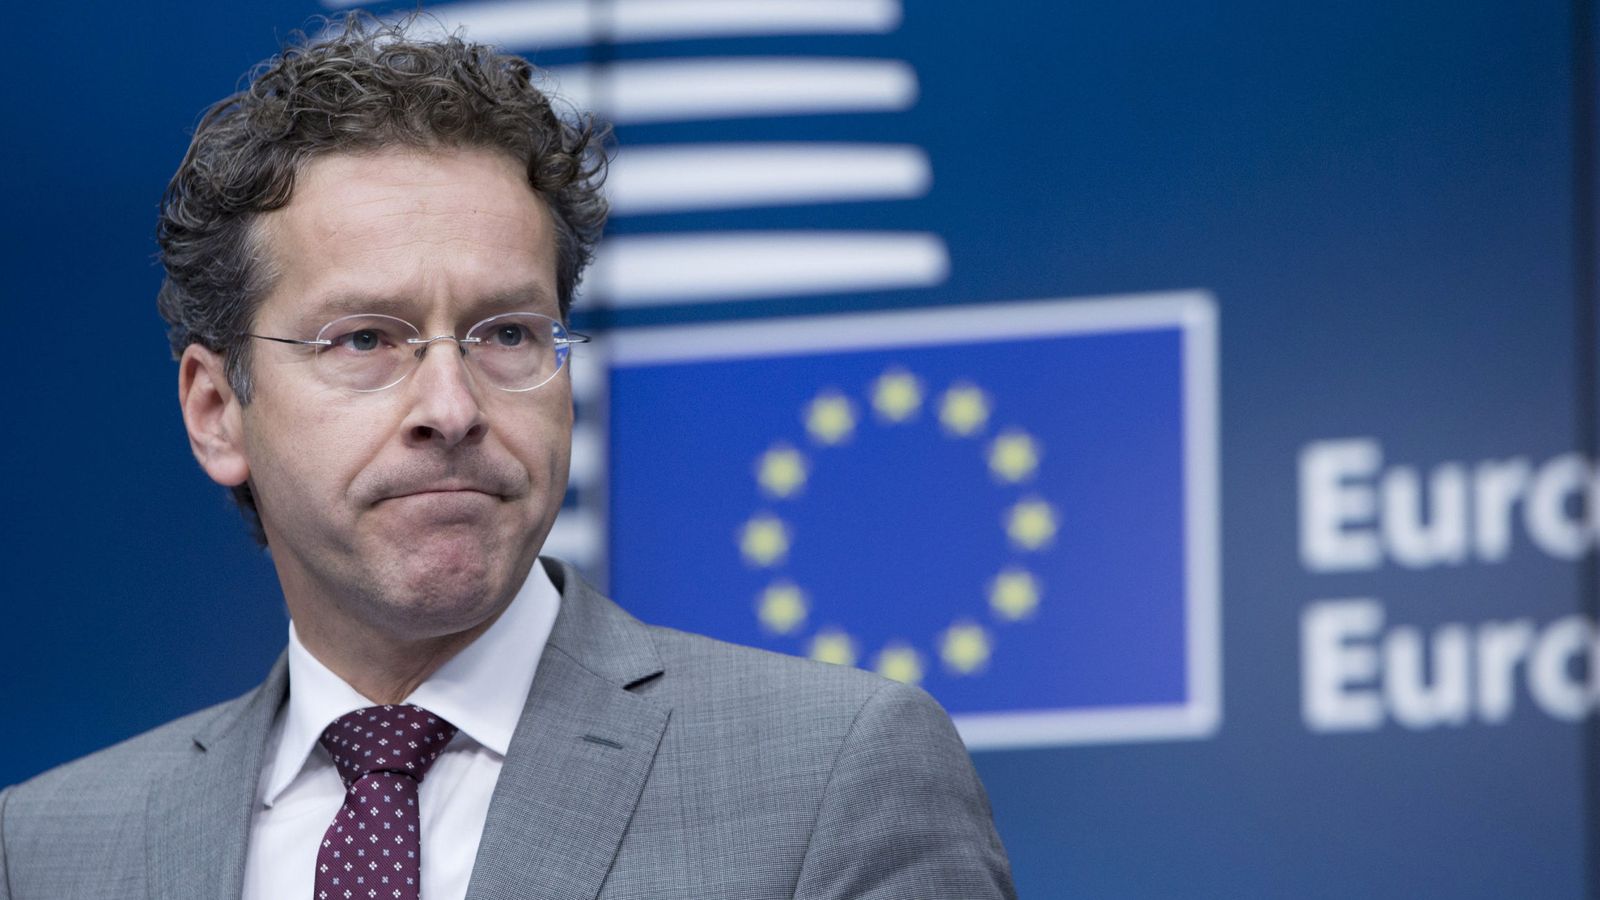 Foto: Imagen de archivo del presidente del Eurogrupo, Jeroen Dijsselbloem. (Reuters)